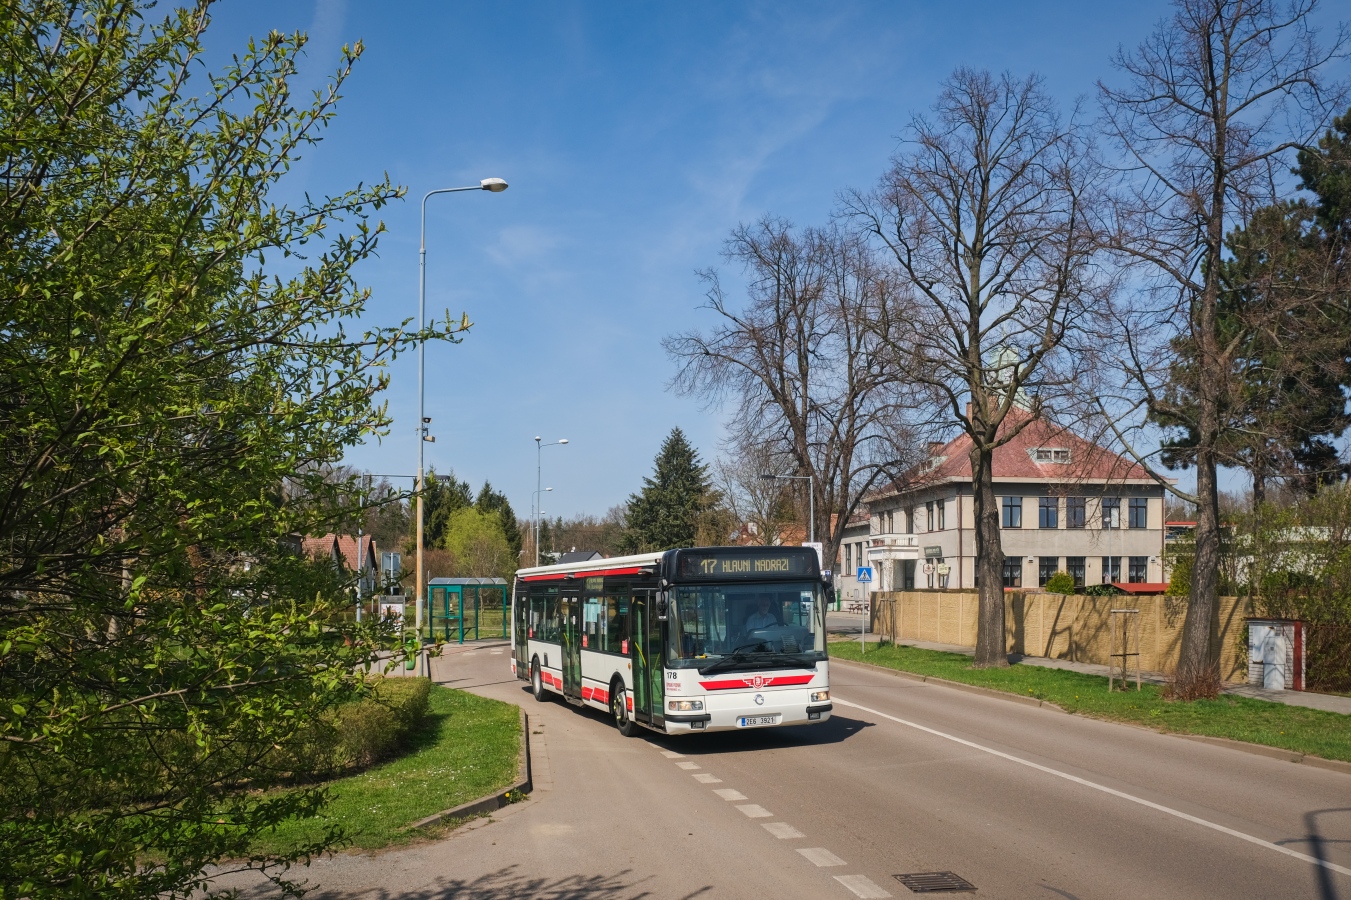 Pardubice, Karosa Citybus 12M.2071 (Irisbus) # 178